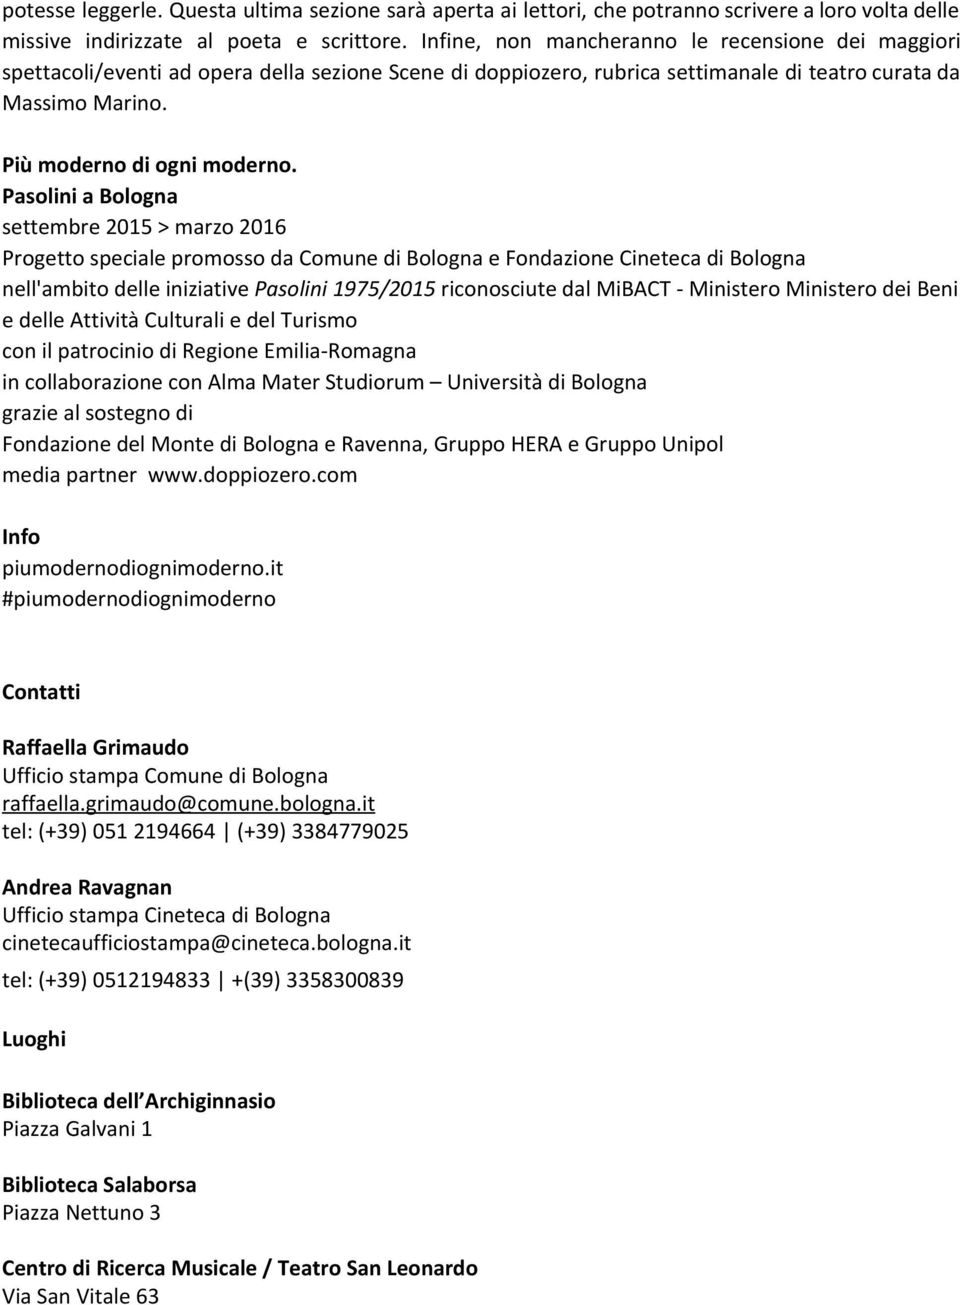 Pasolini a Bologna settembre 2015 > marzo 2016 Progetto speciale promosso da Comune di Bologna e Fondazione Cineteca di Bologna nell'ambito delle iniziative Pasolini 1975/2015 riconosciute dal MiBACT